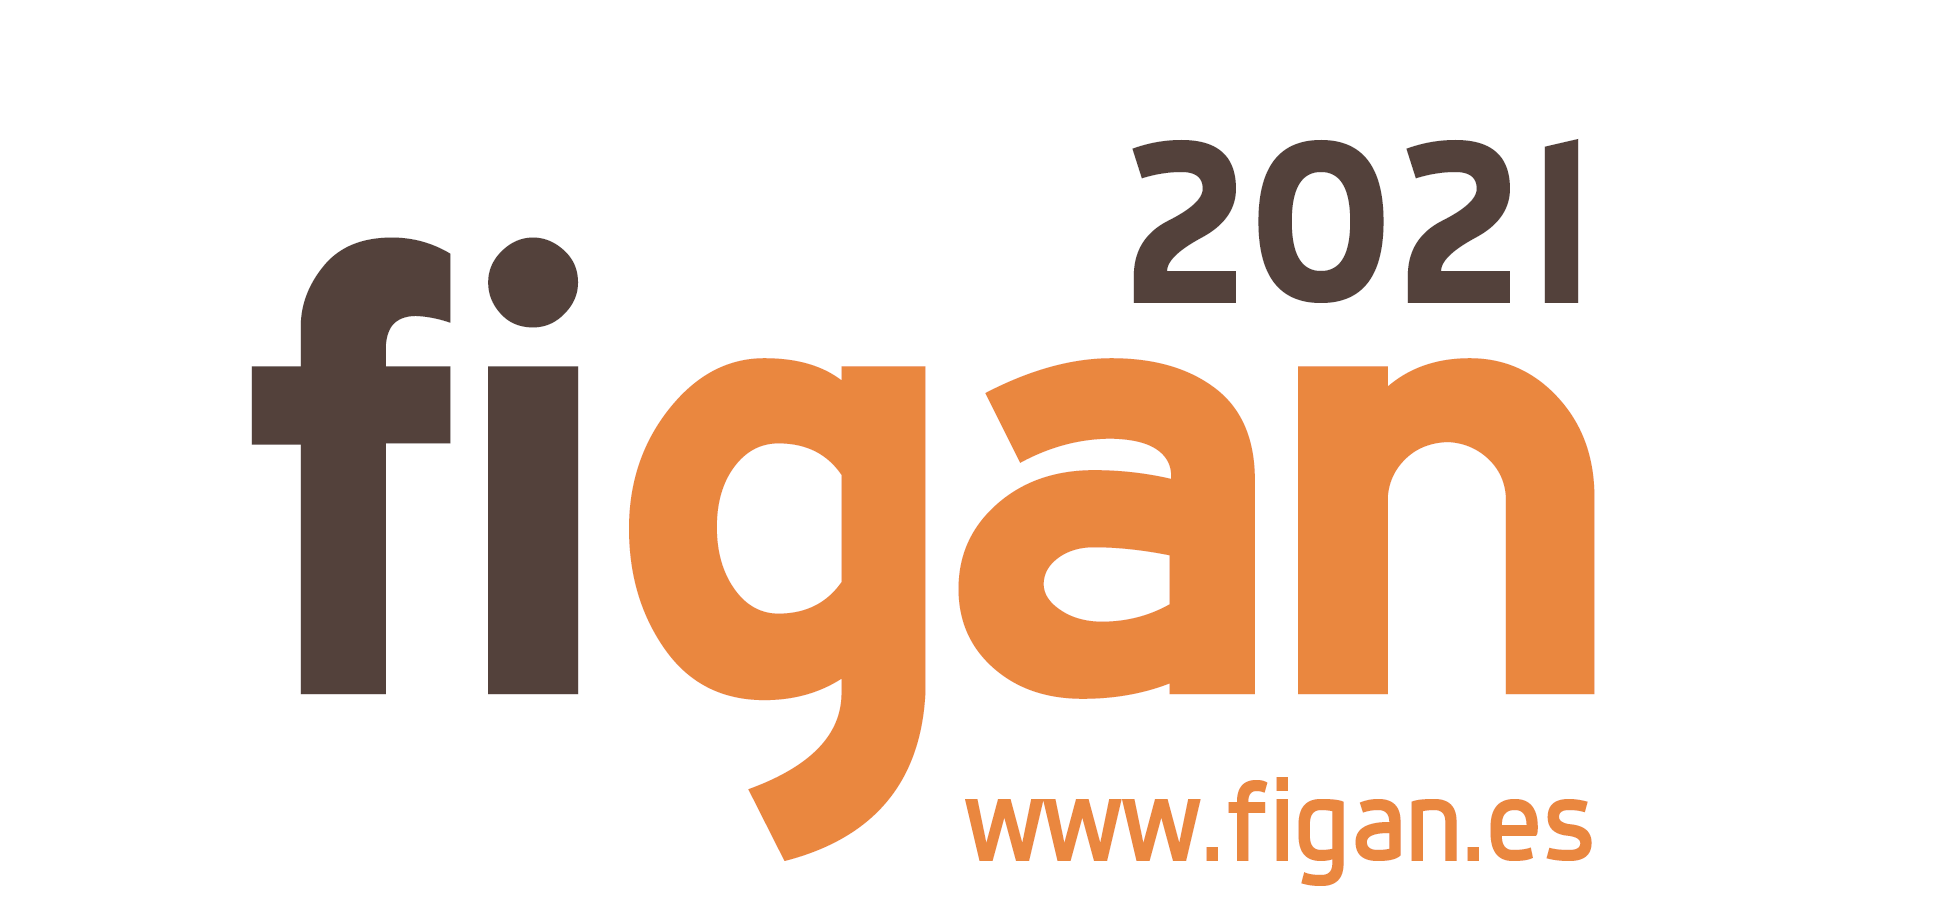 FIGAN 2021 kicks off